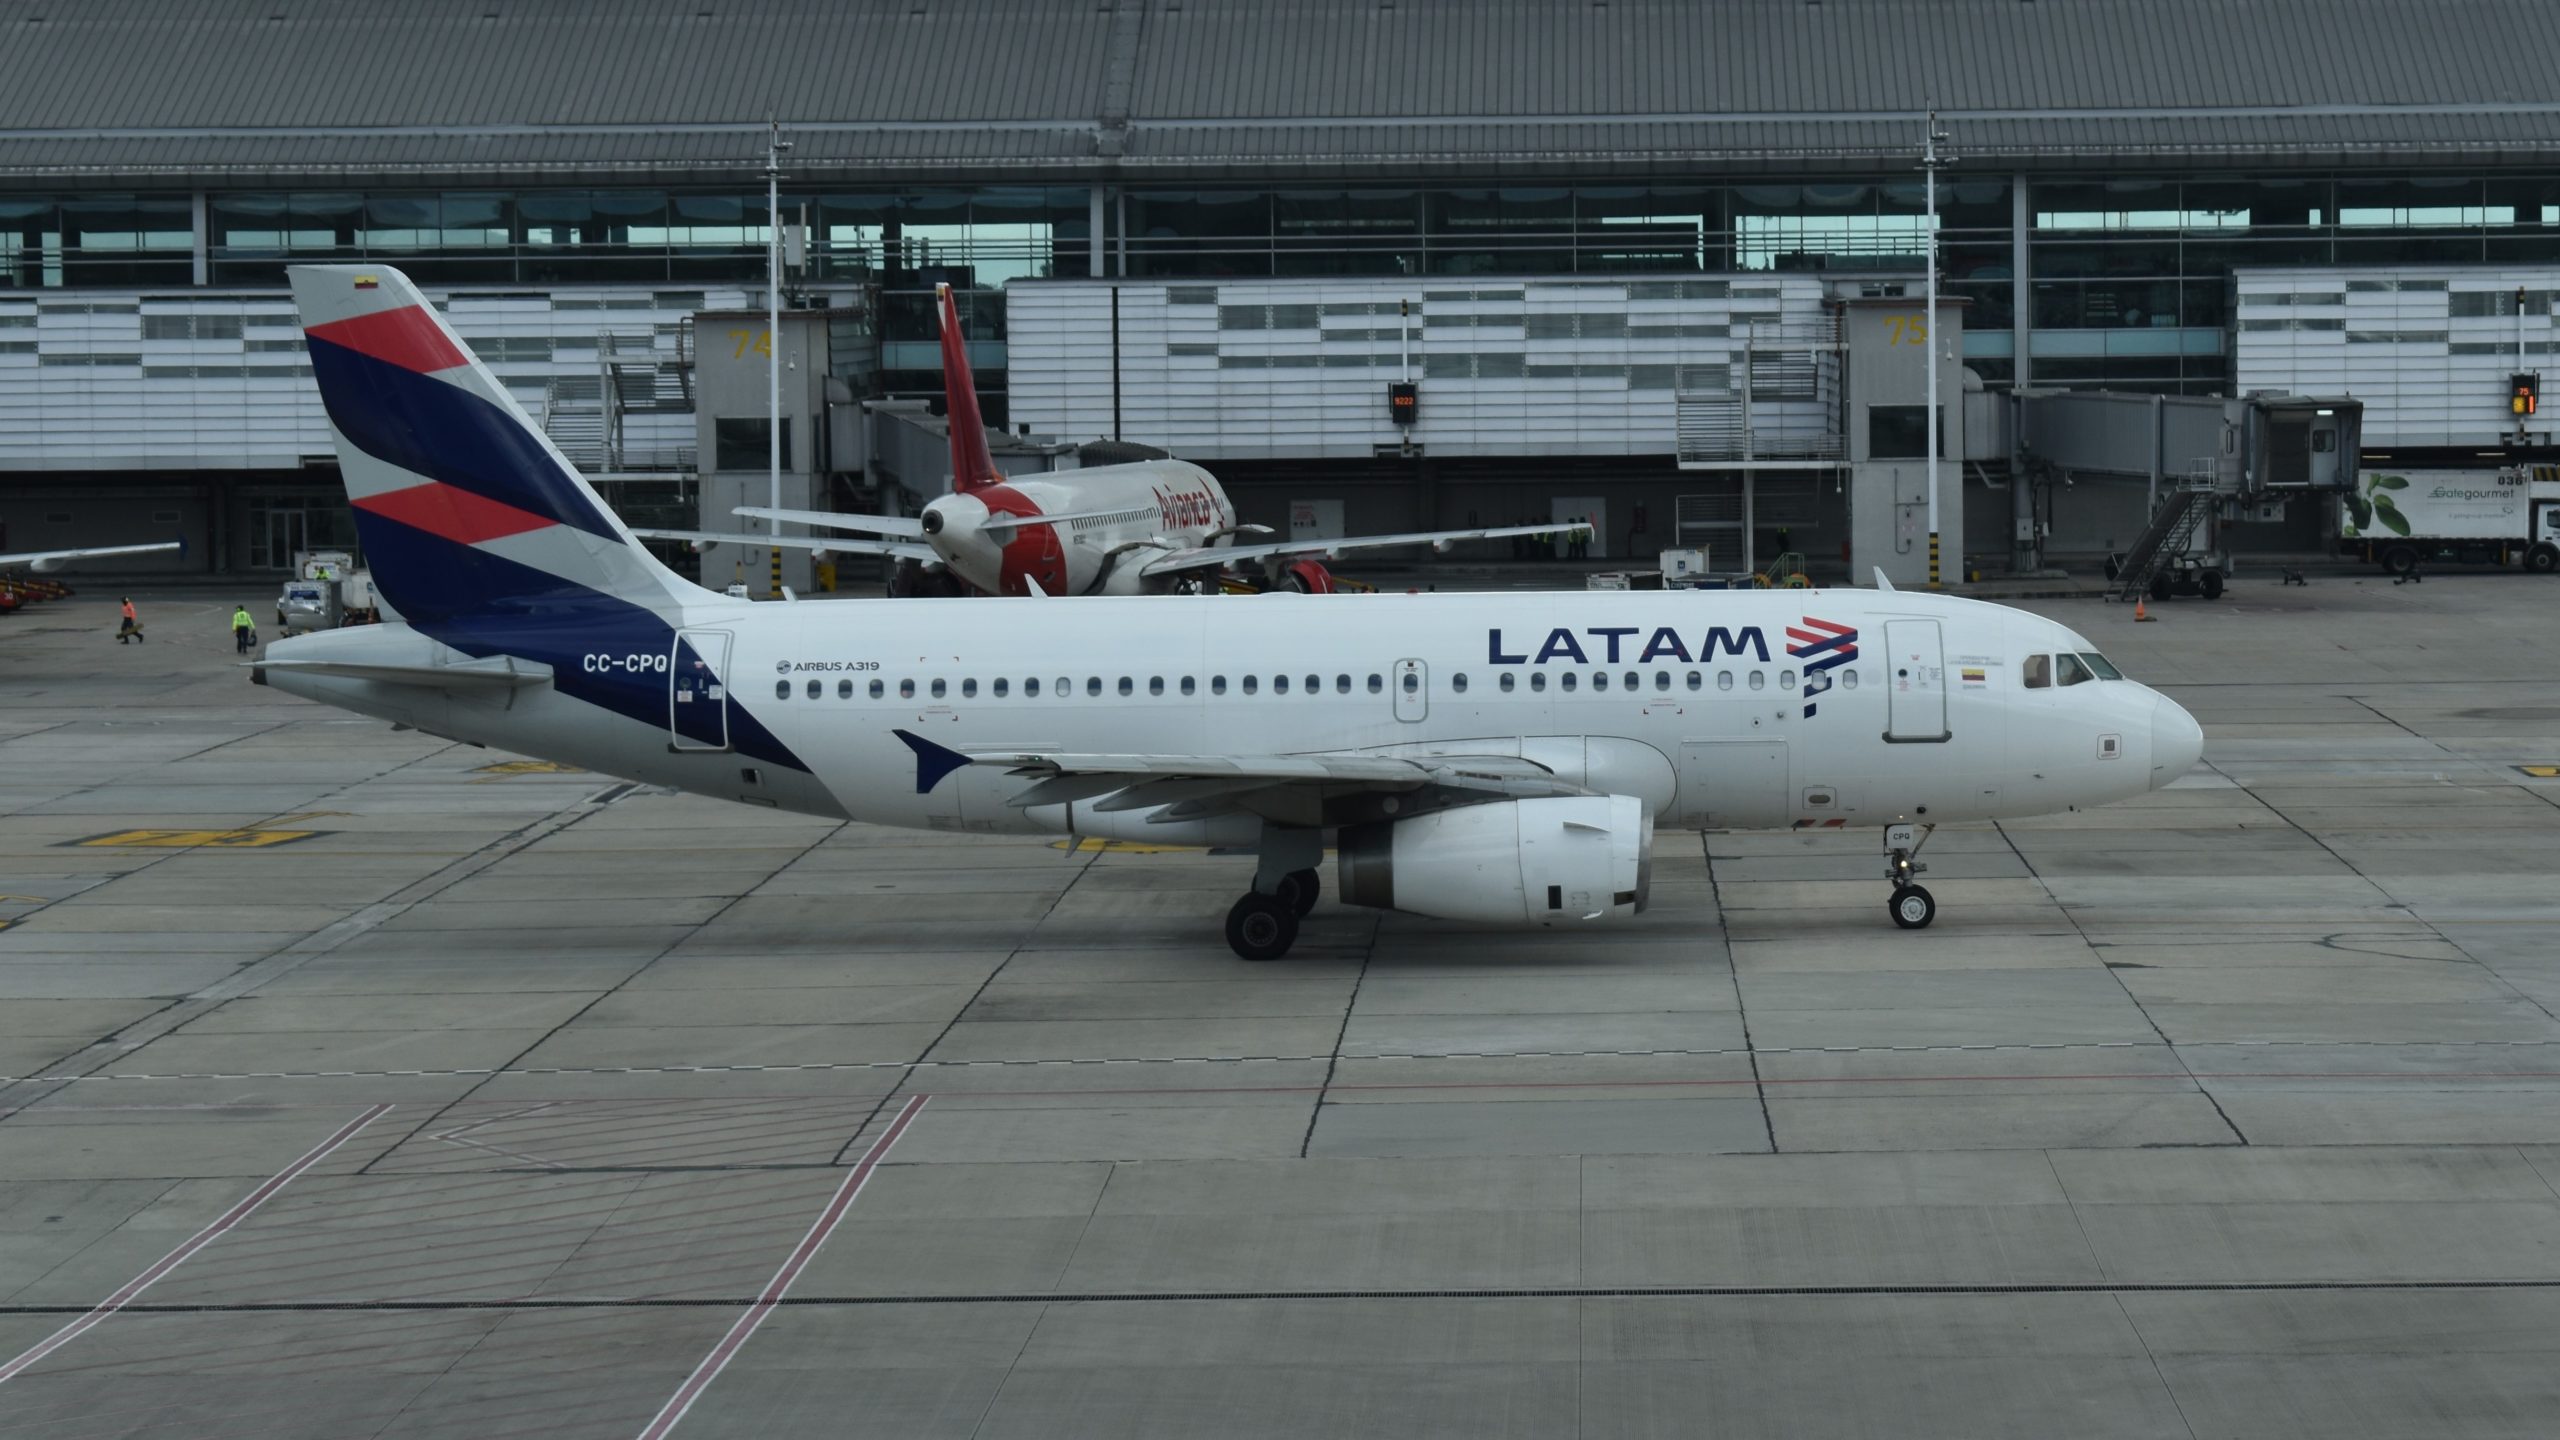 LATAM A319 at Bogota Airport